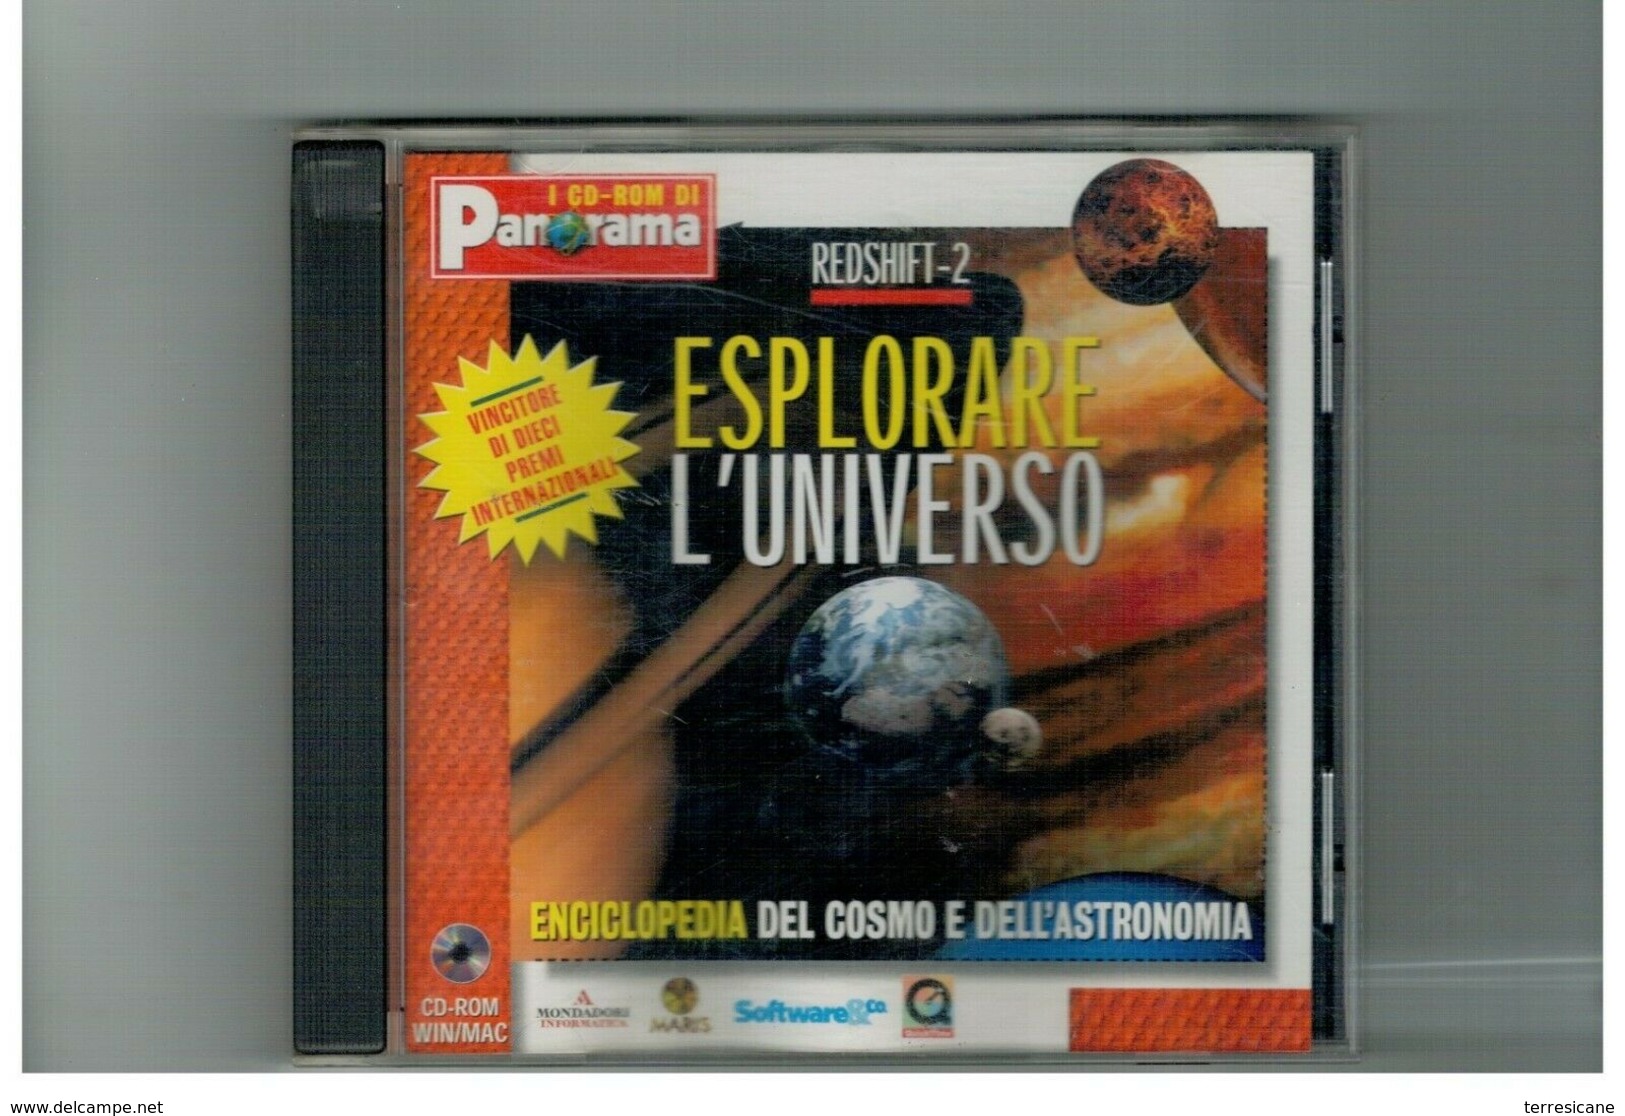 CD ROM REDSHIFT-2 ESPLORARE L'UNIVERSO ENCICLOPEDIA ASTRONOMIA PANORAMA - CD